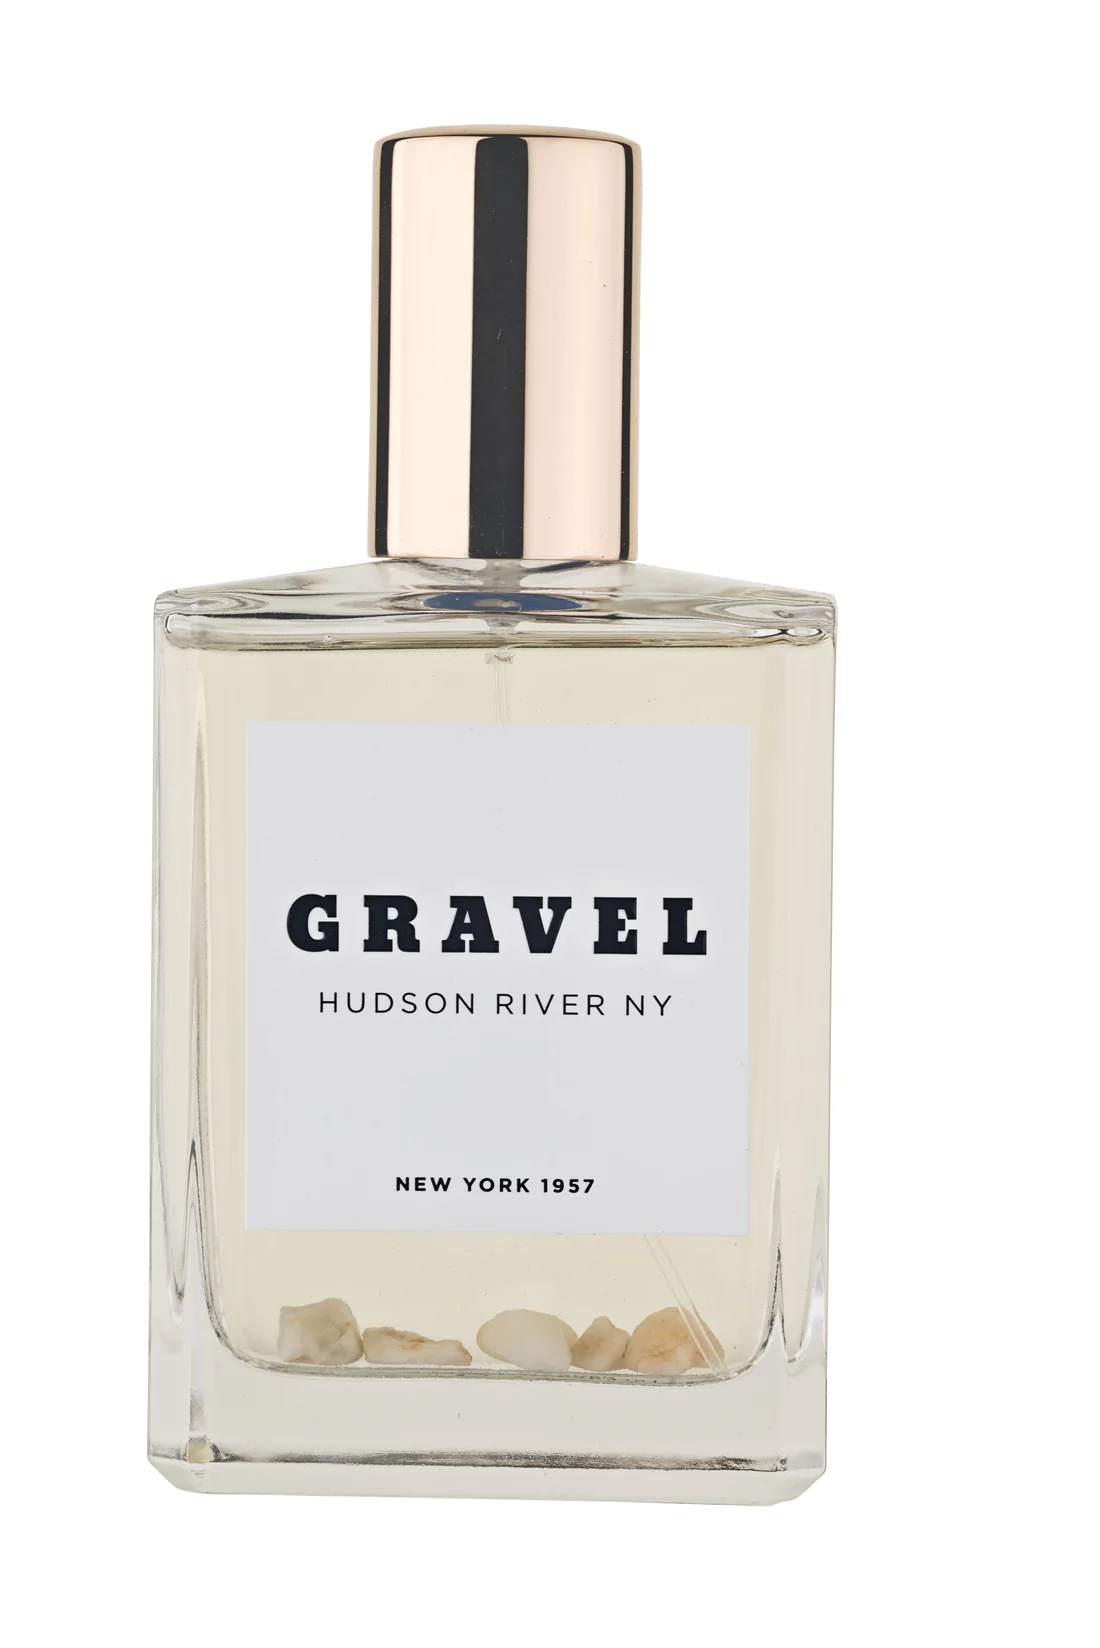 Gravel - Hudson River NY - Eau de Parfum